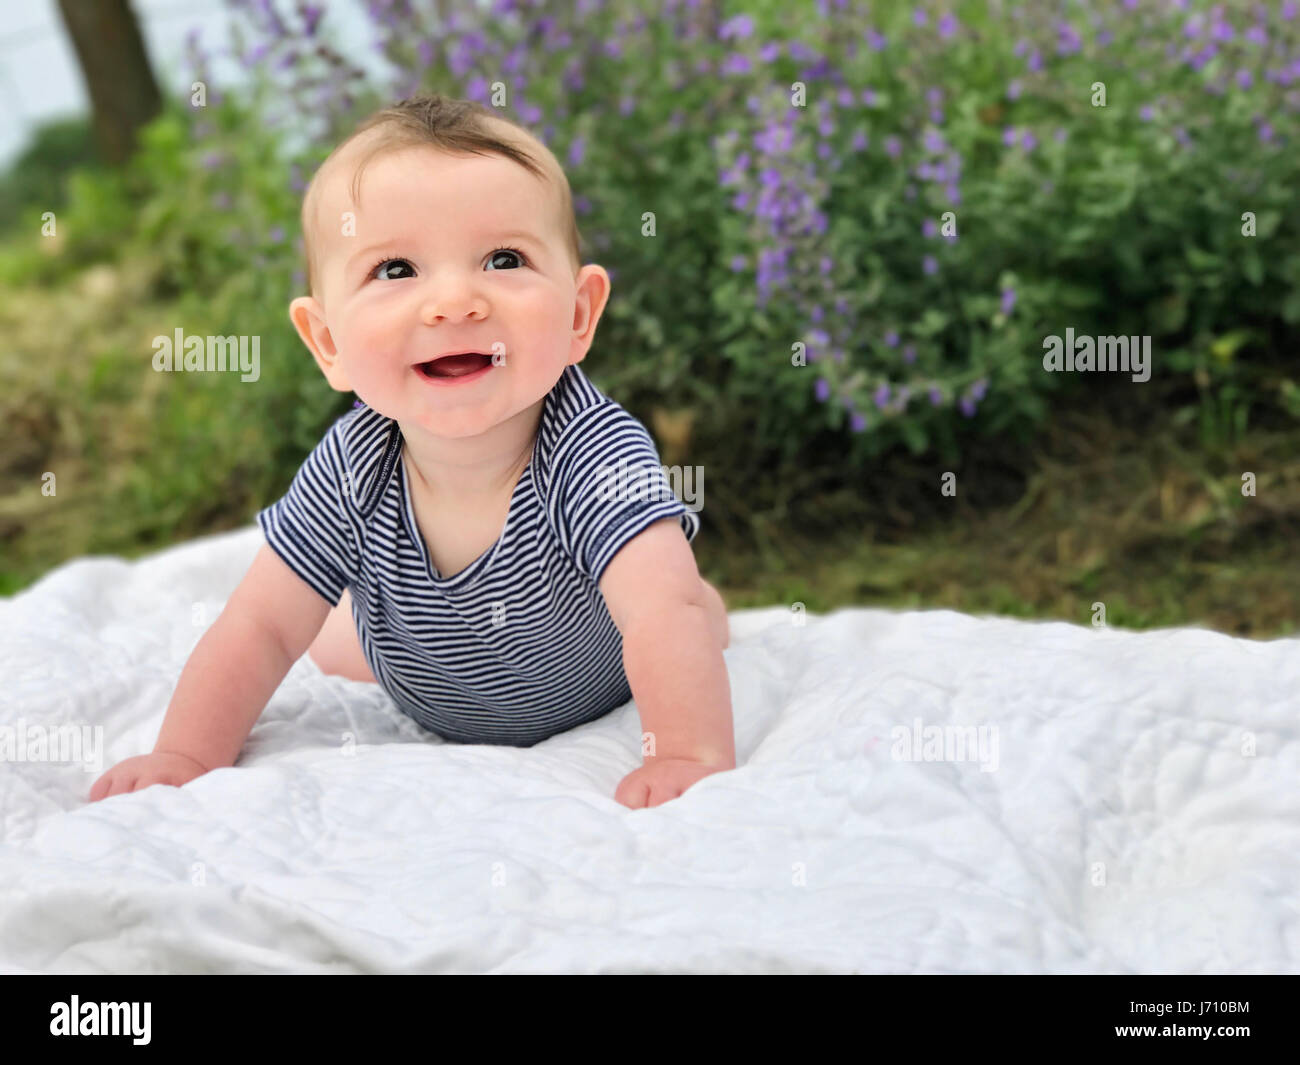 Cute happy Baby Boy sentar sobre una manta mirando hacia arriba Foto de stock